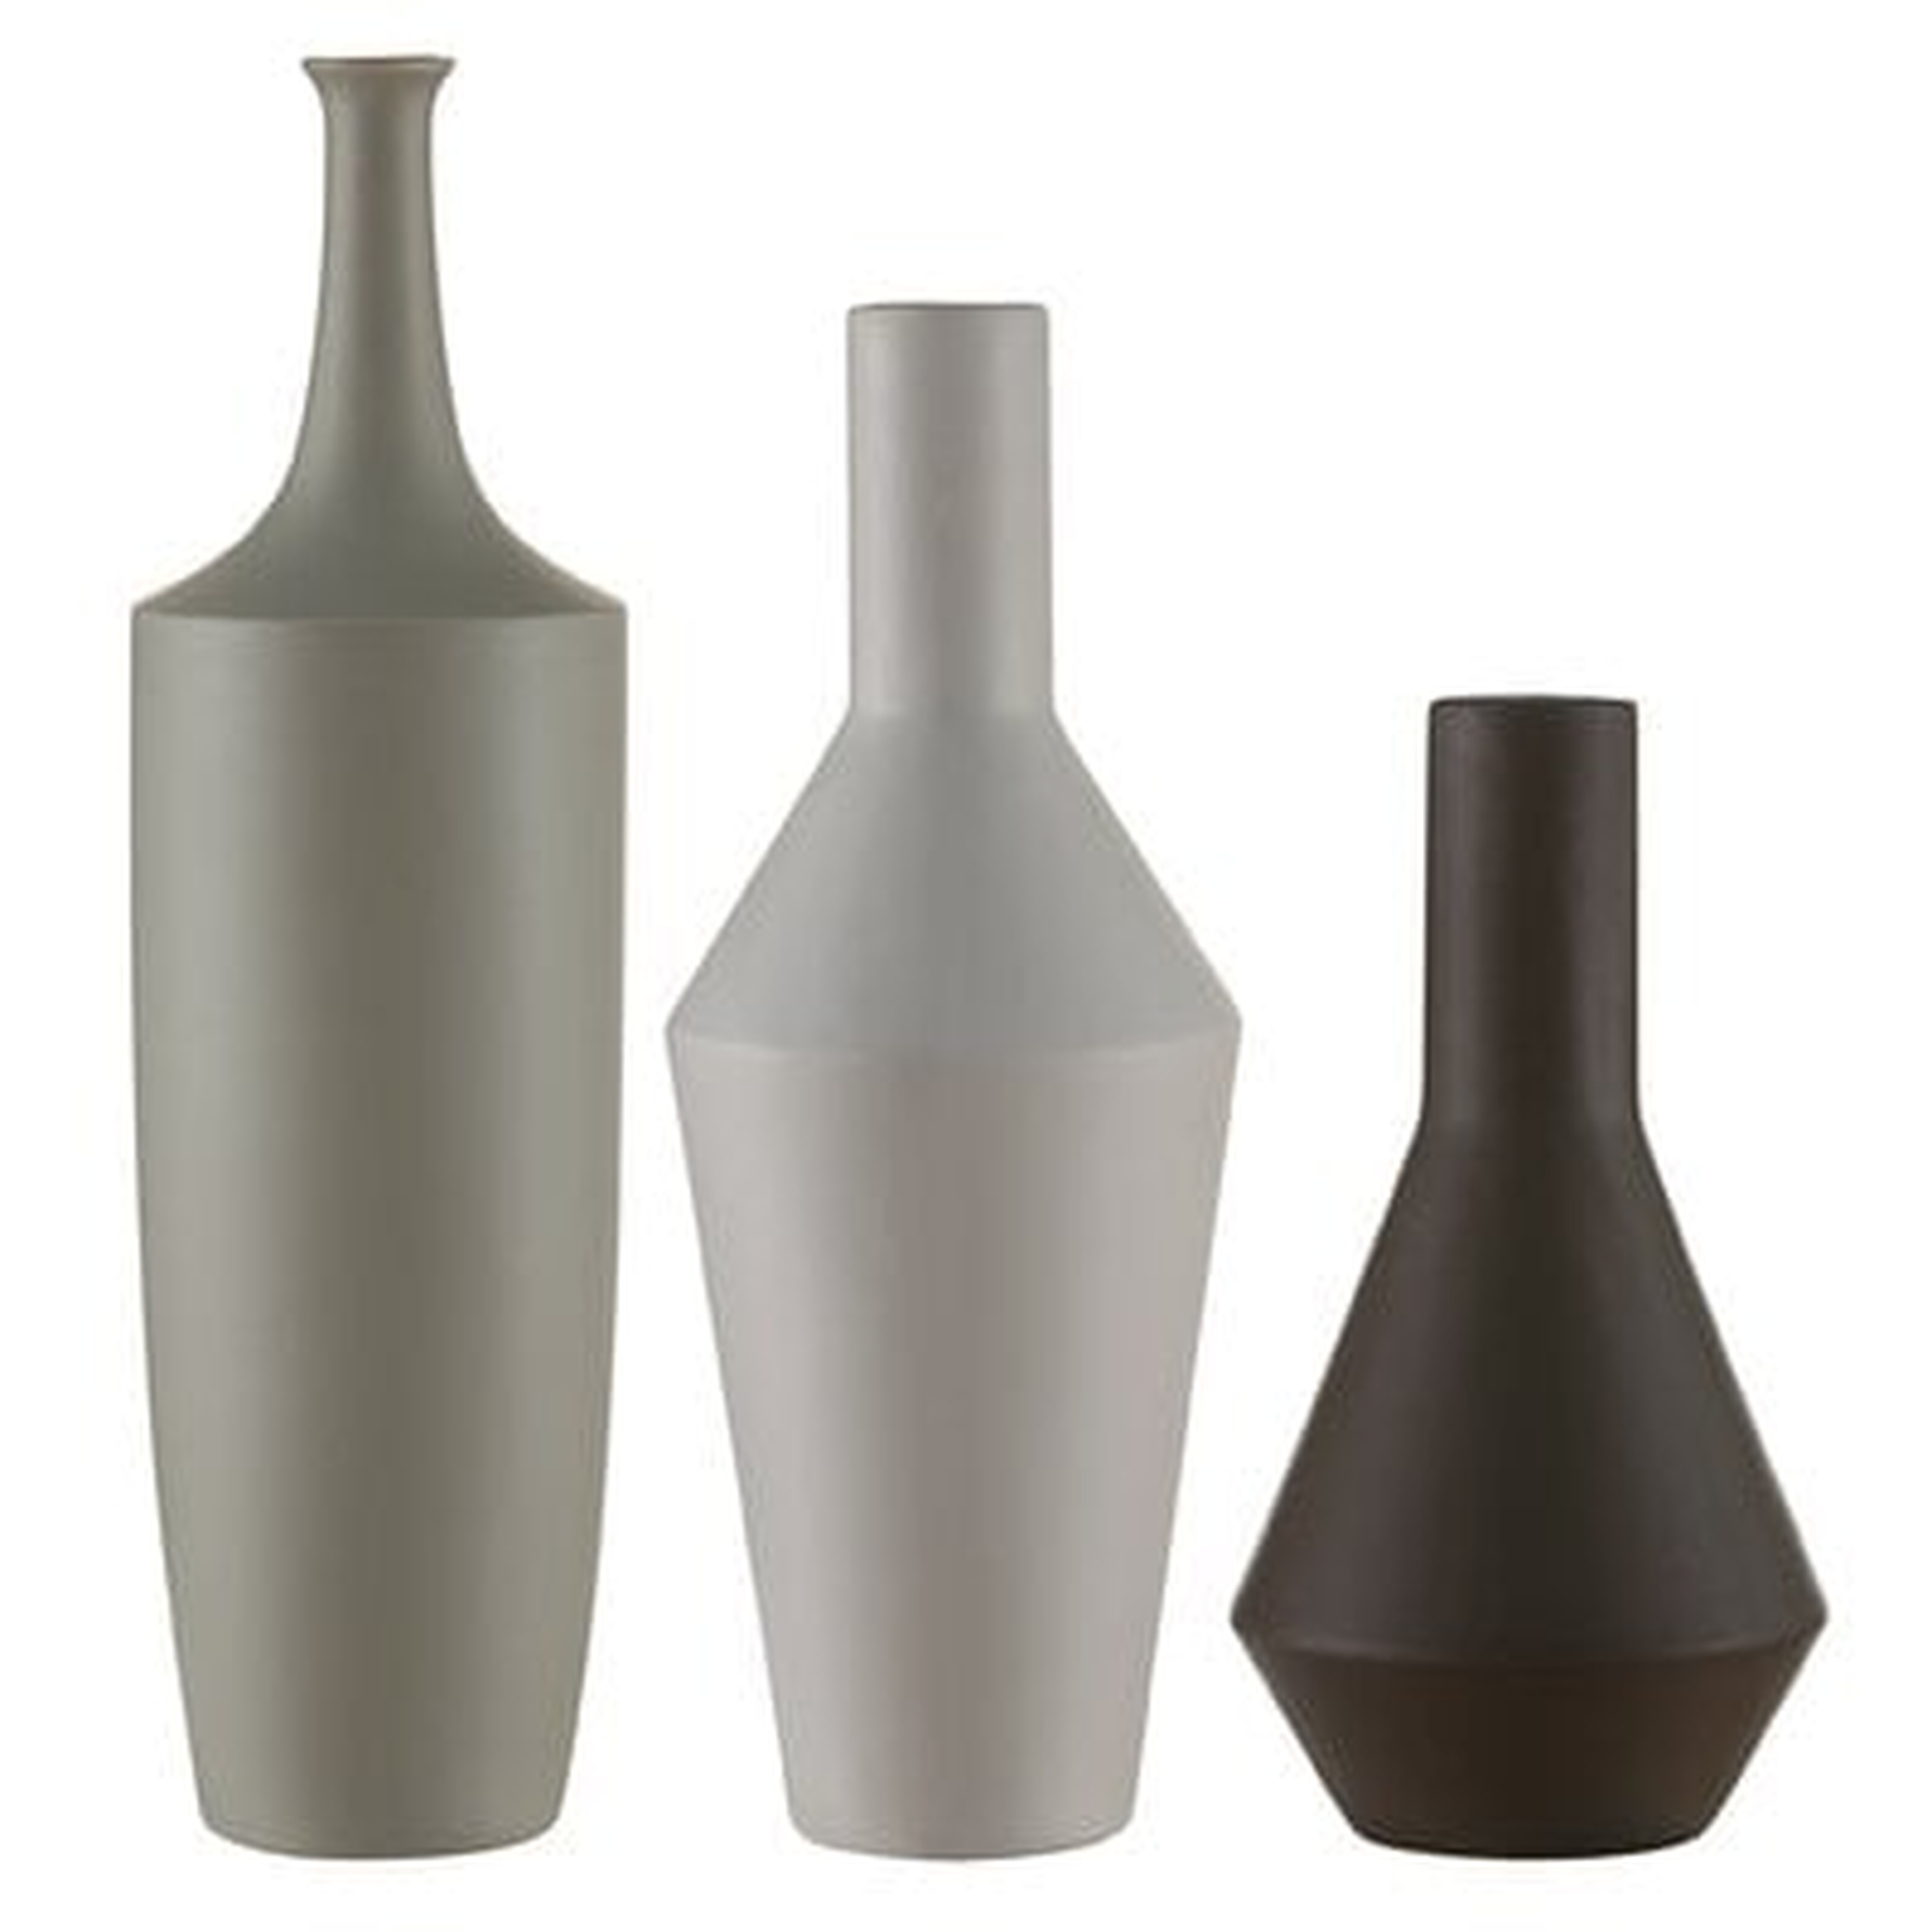 Charlbury Bottles, Set of 3 with Glazed Ceramic Finish - Wayfair